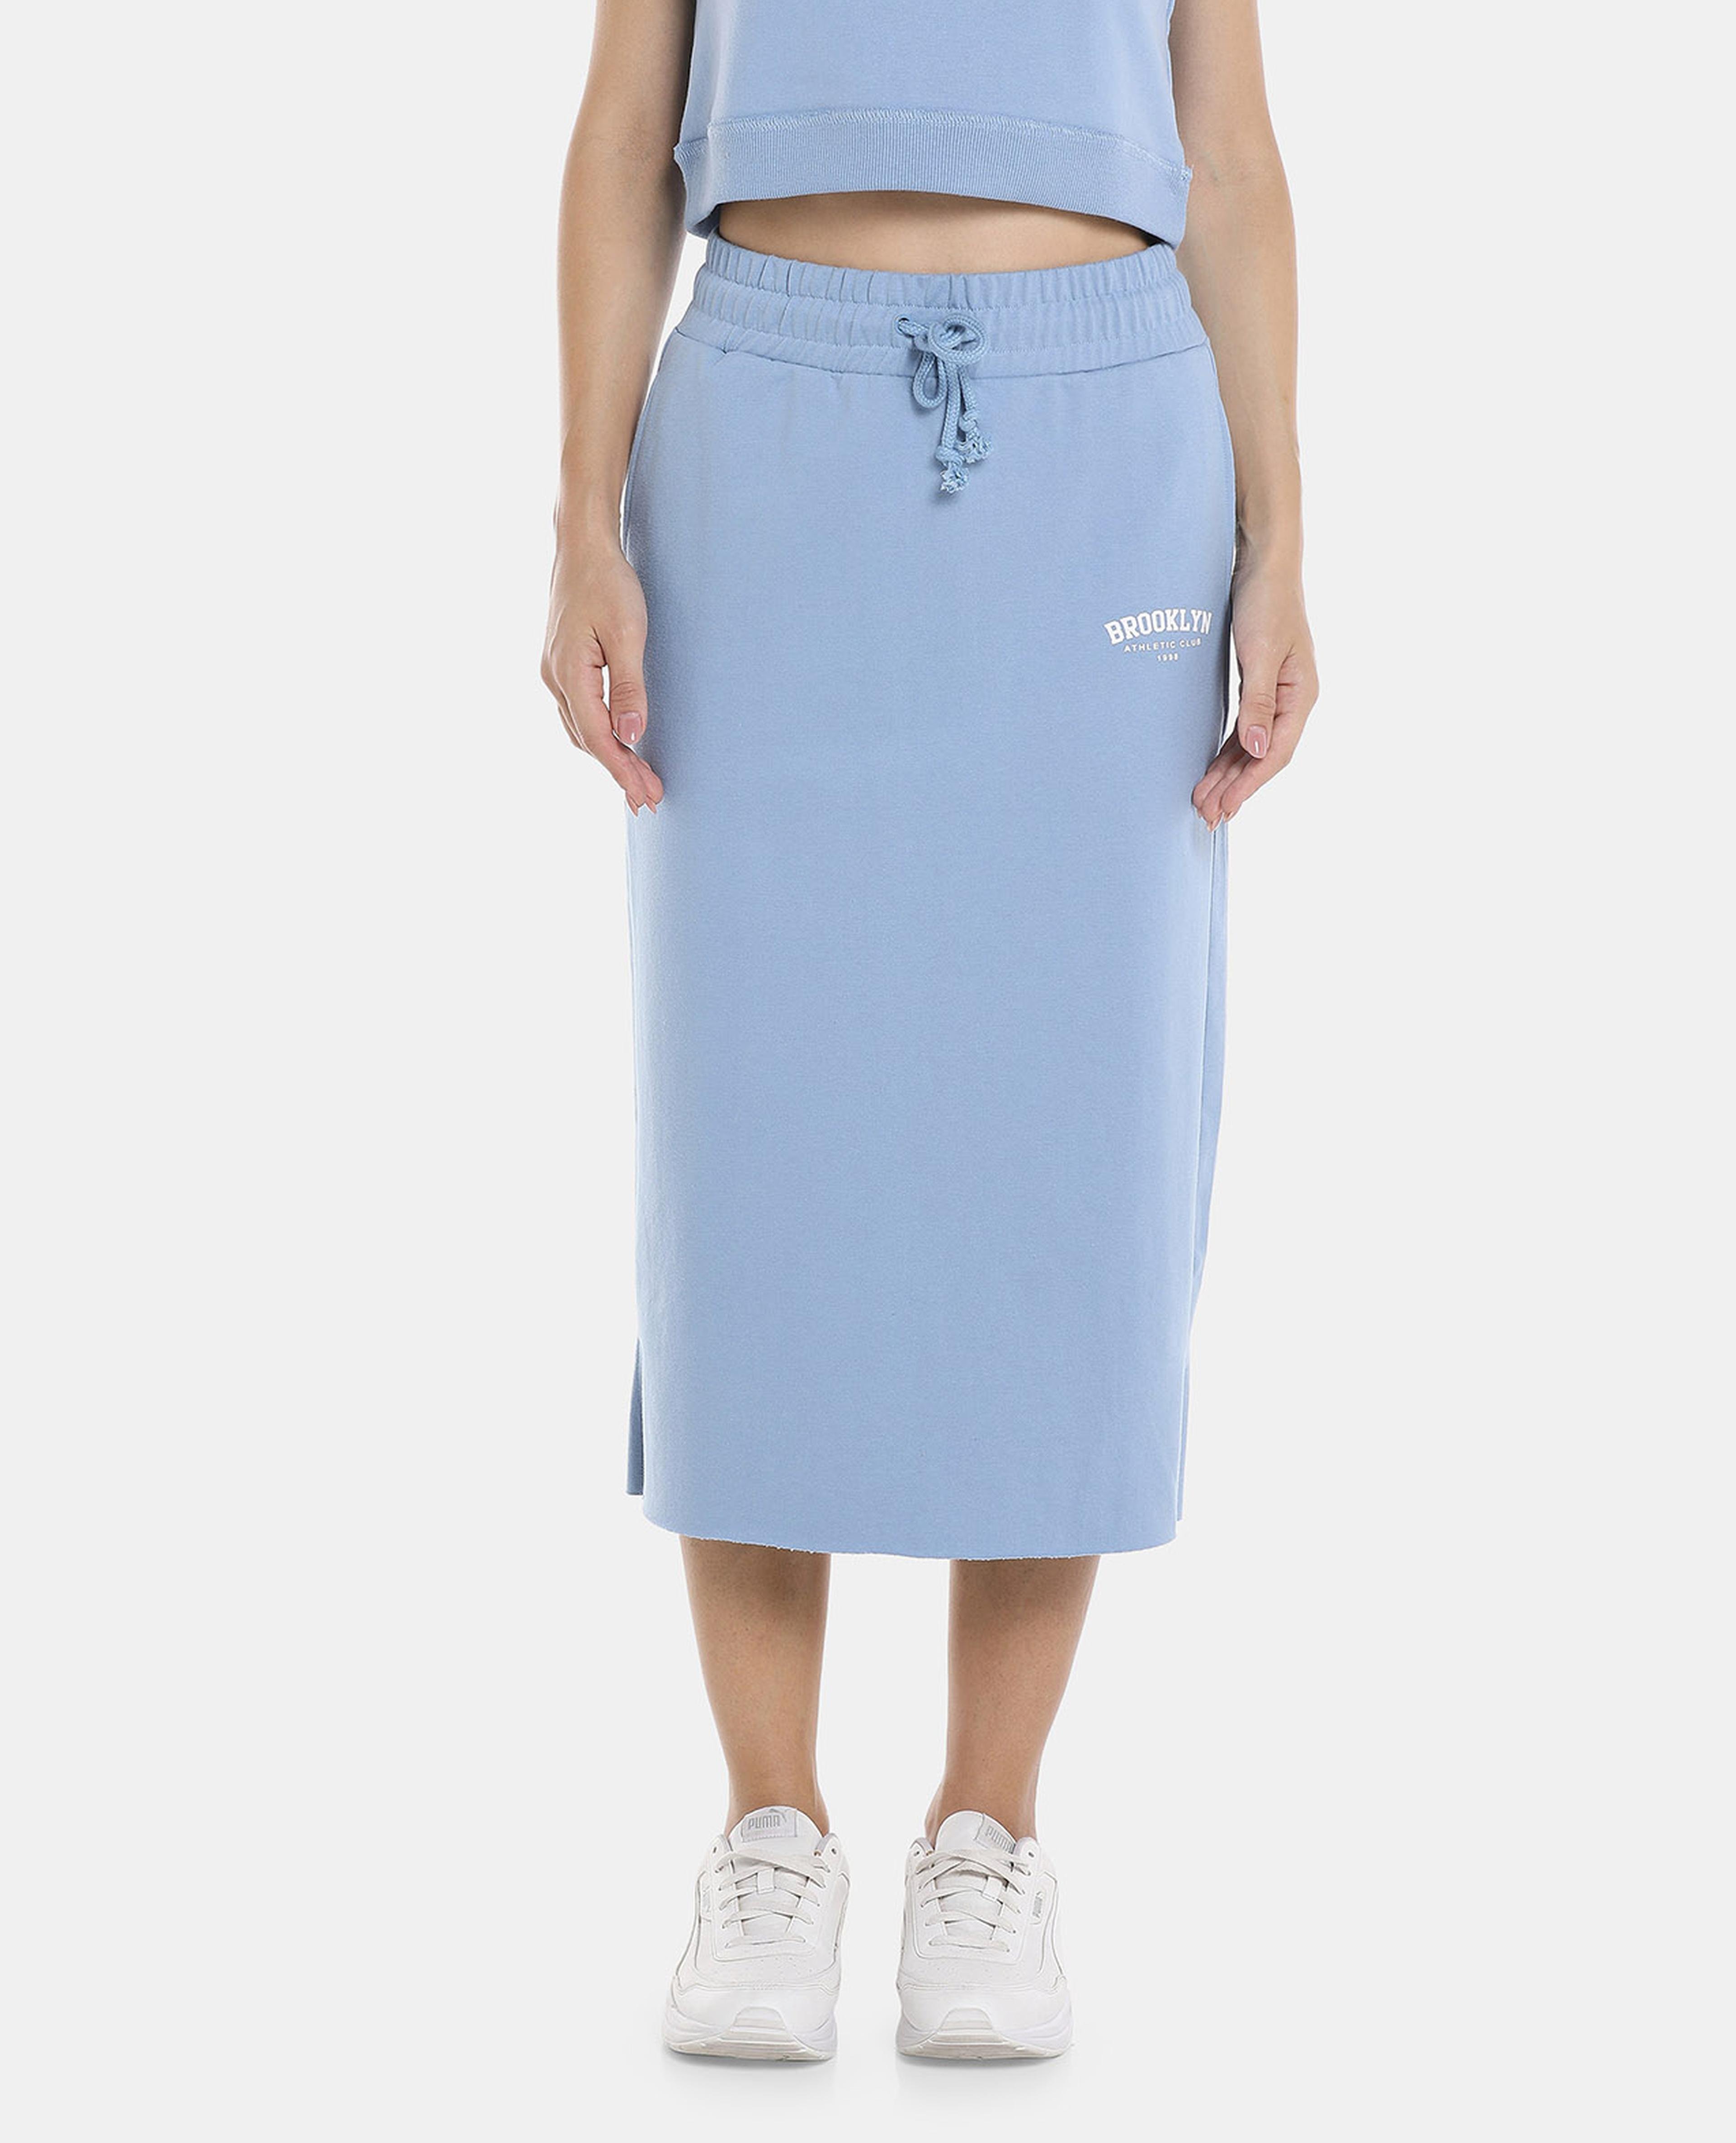 Printed Midi Length Skirt